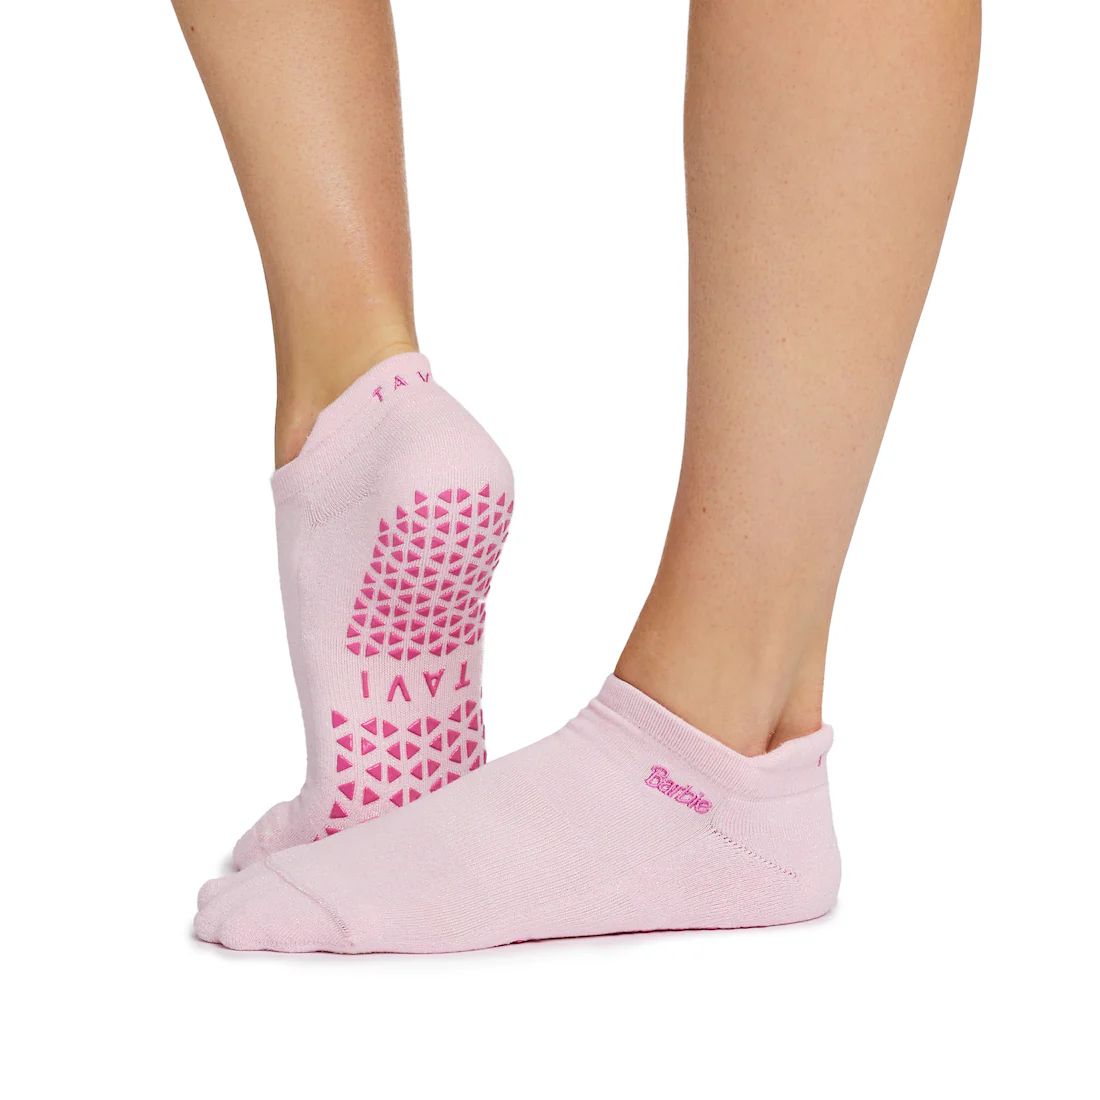 Barbie Savvy Grip Socks | Tavi